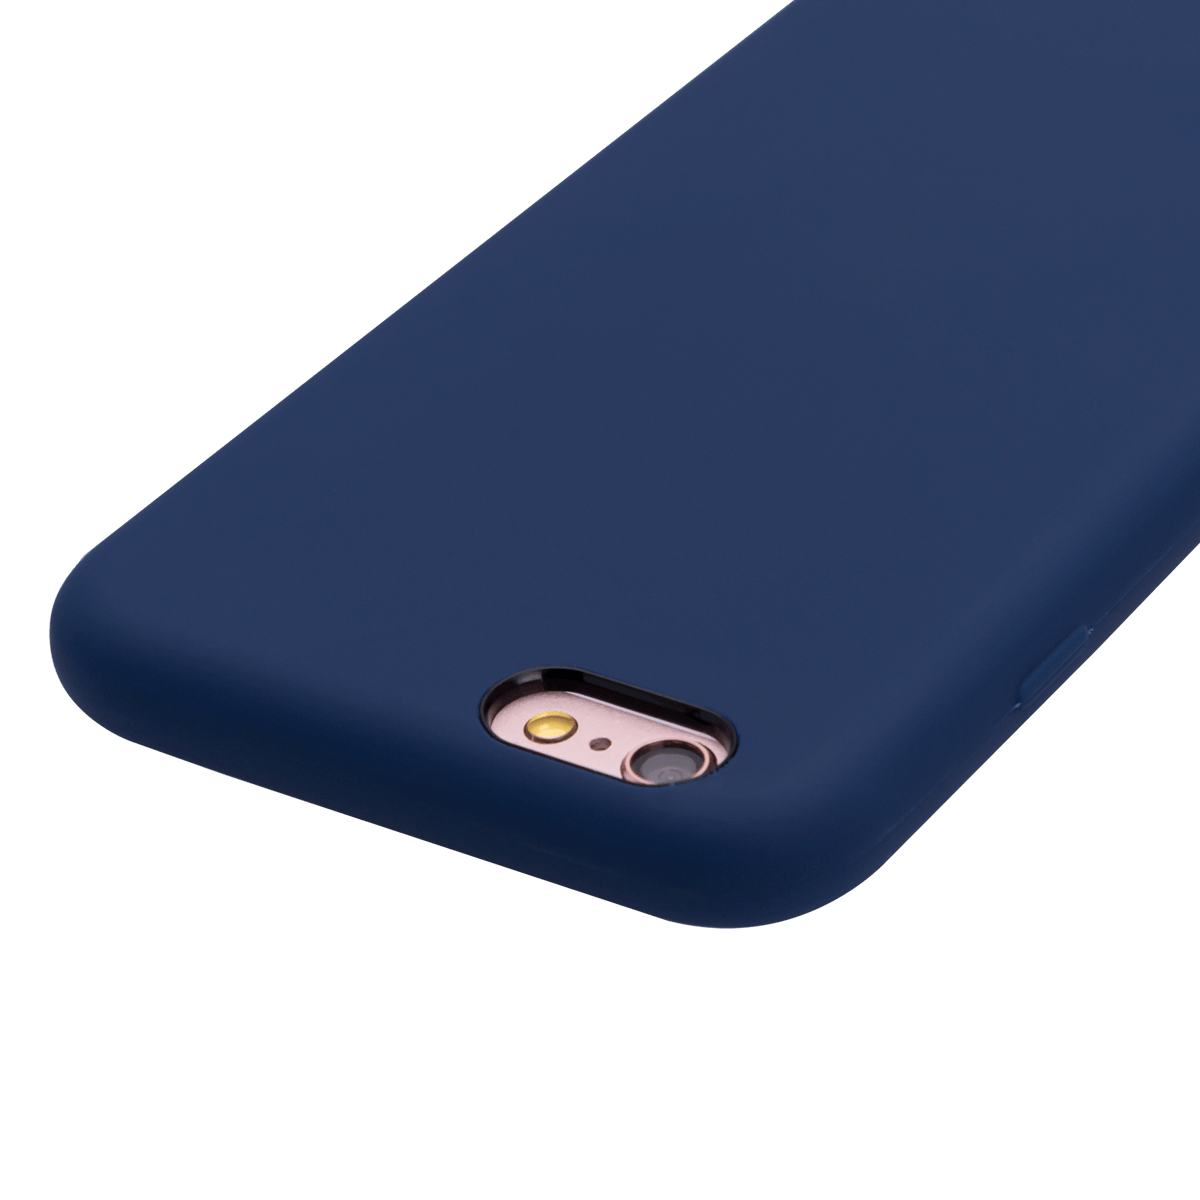 iPhone 6/6S Plus için spada Liquid Silikon Lacivert renkli kapak